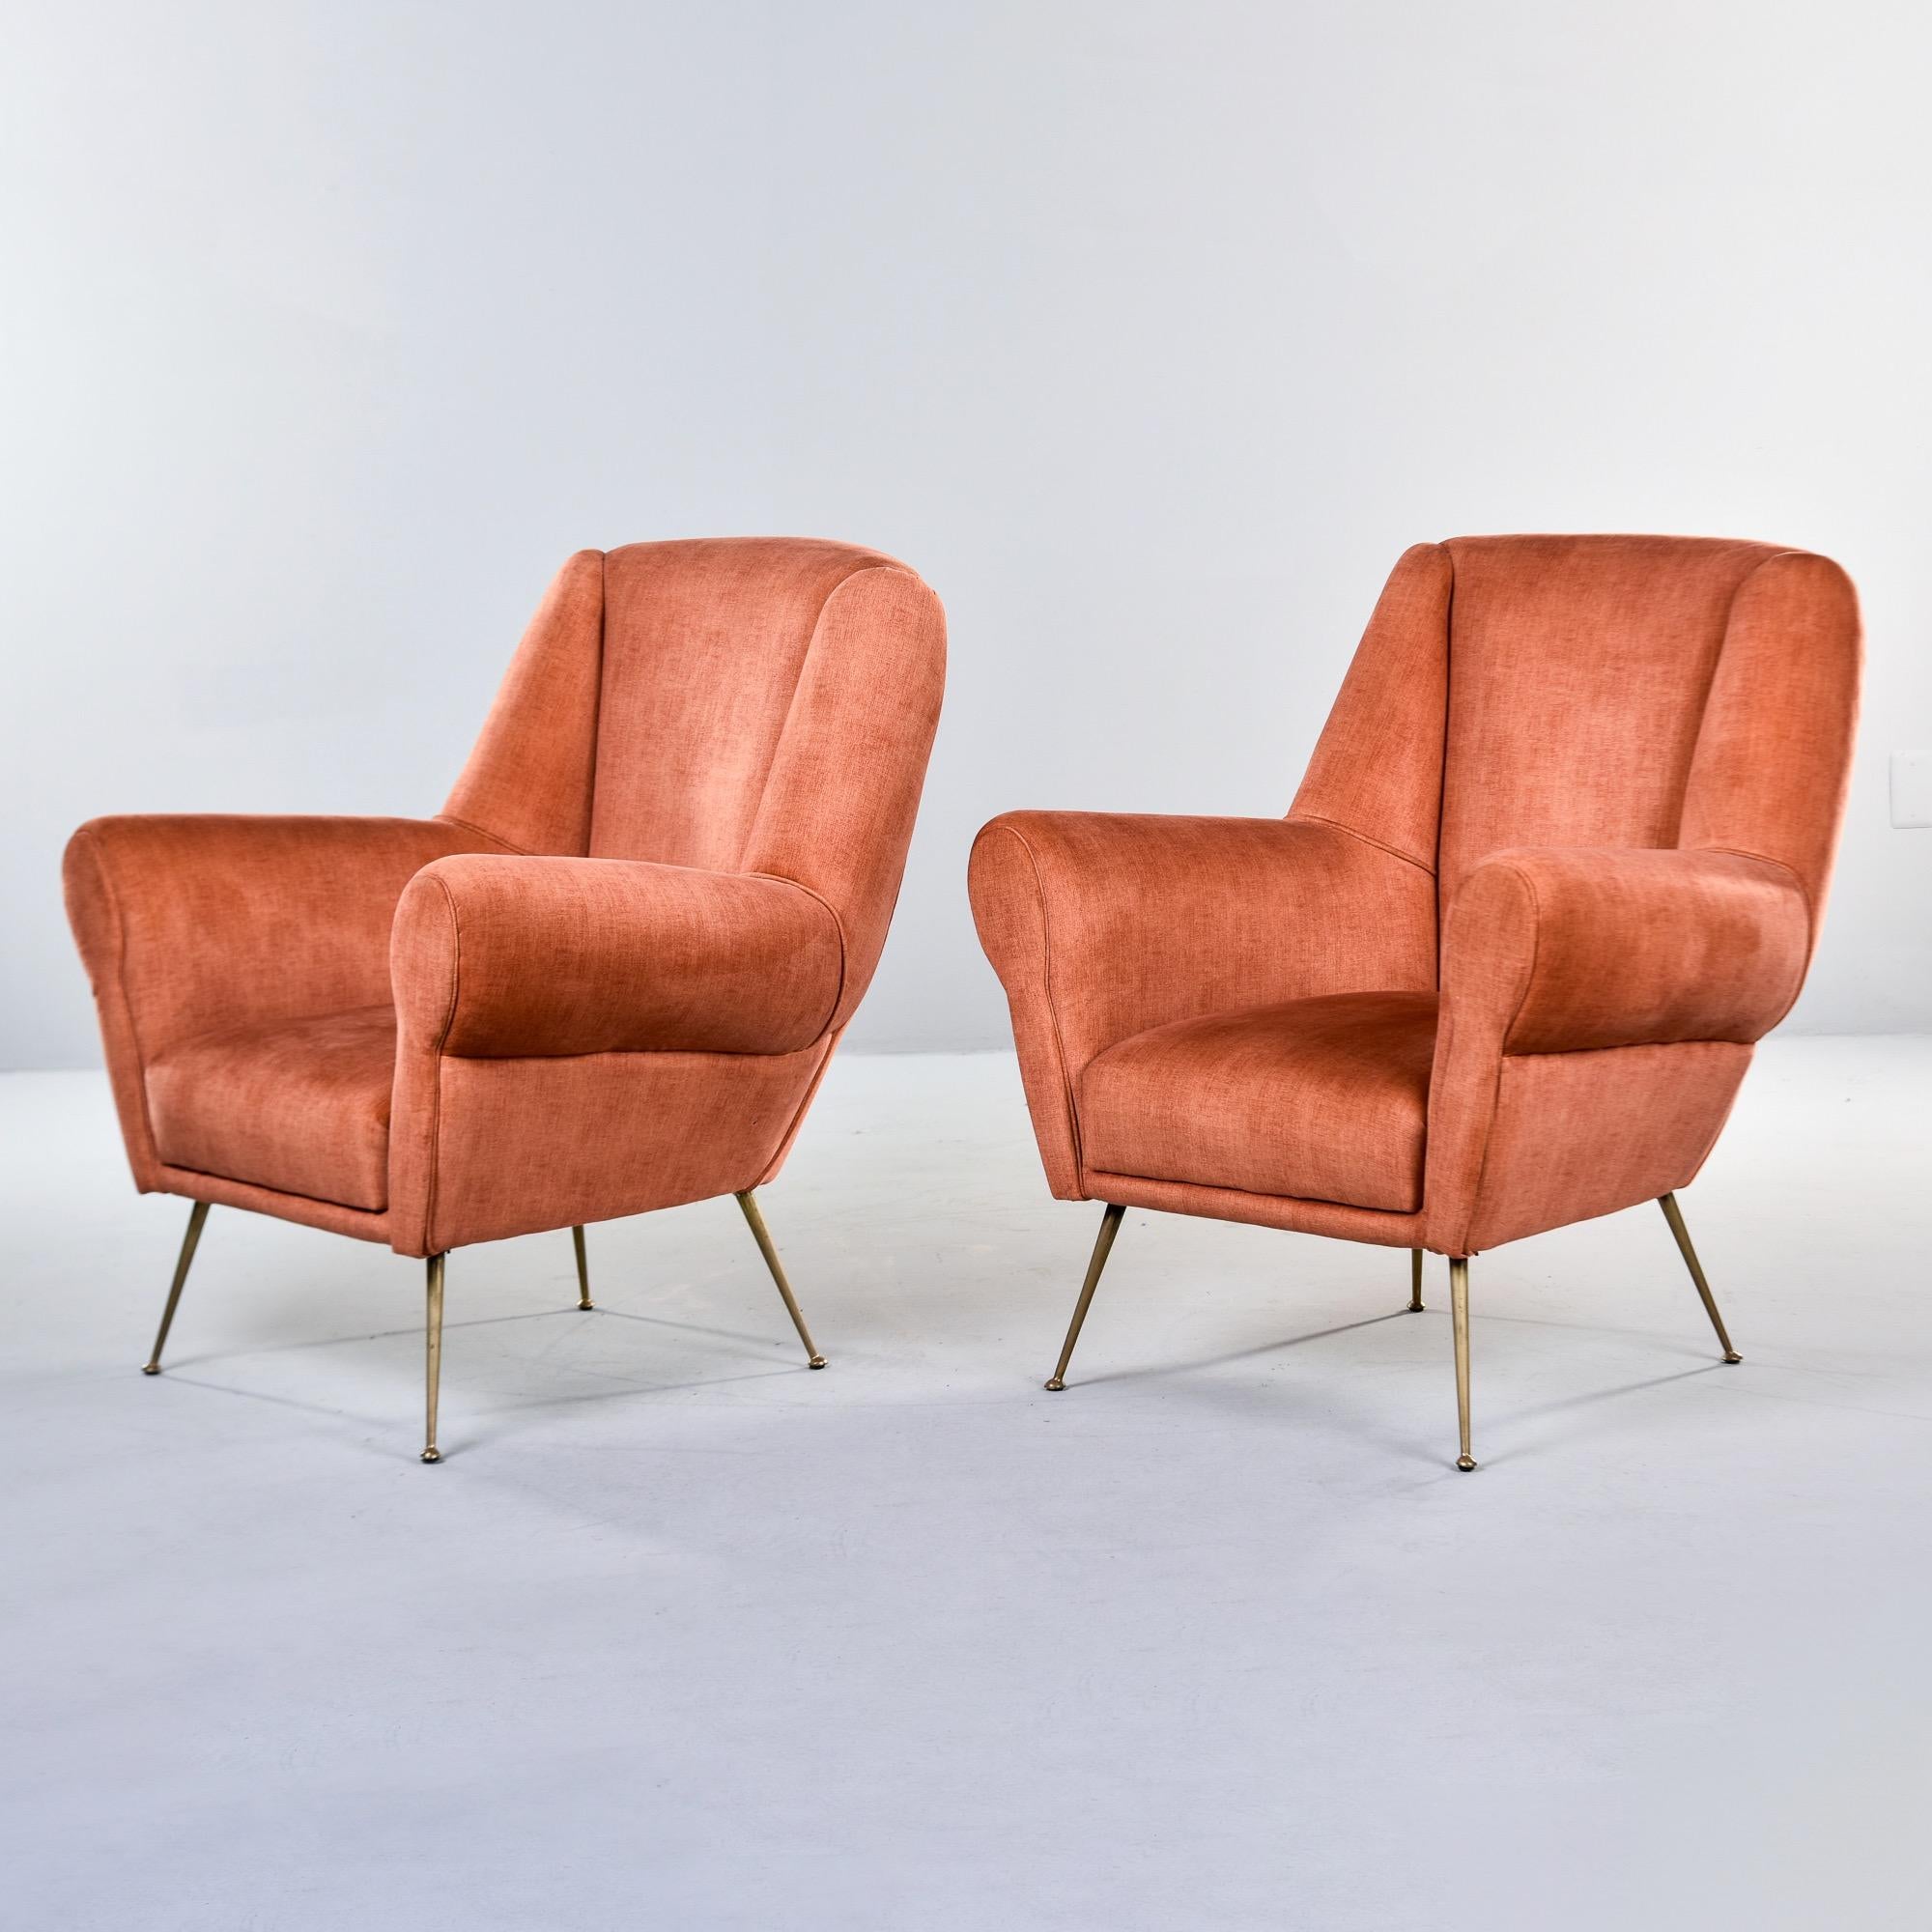 Trouvée en Italie, cette paire de chaises longues rembourrées date des années 1950. Ces chaises sont dotées d'un nouveau revêtement en velours chenille abricot foncé, de hauts dossiers, d'accoudoirs roulés et de pieds et de jambes élancés en laiton.